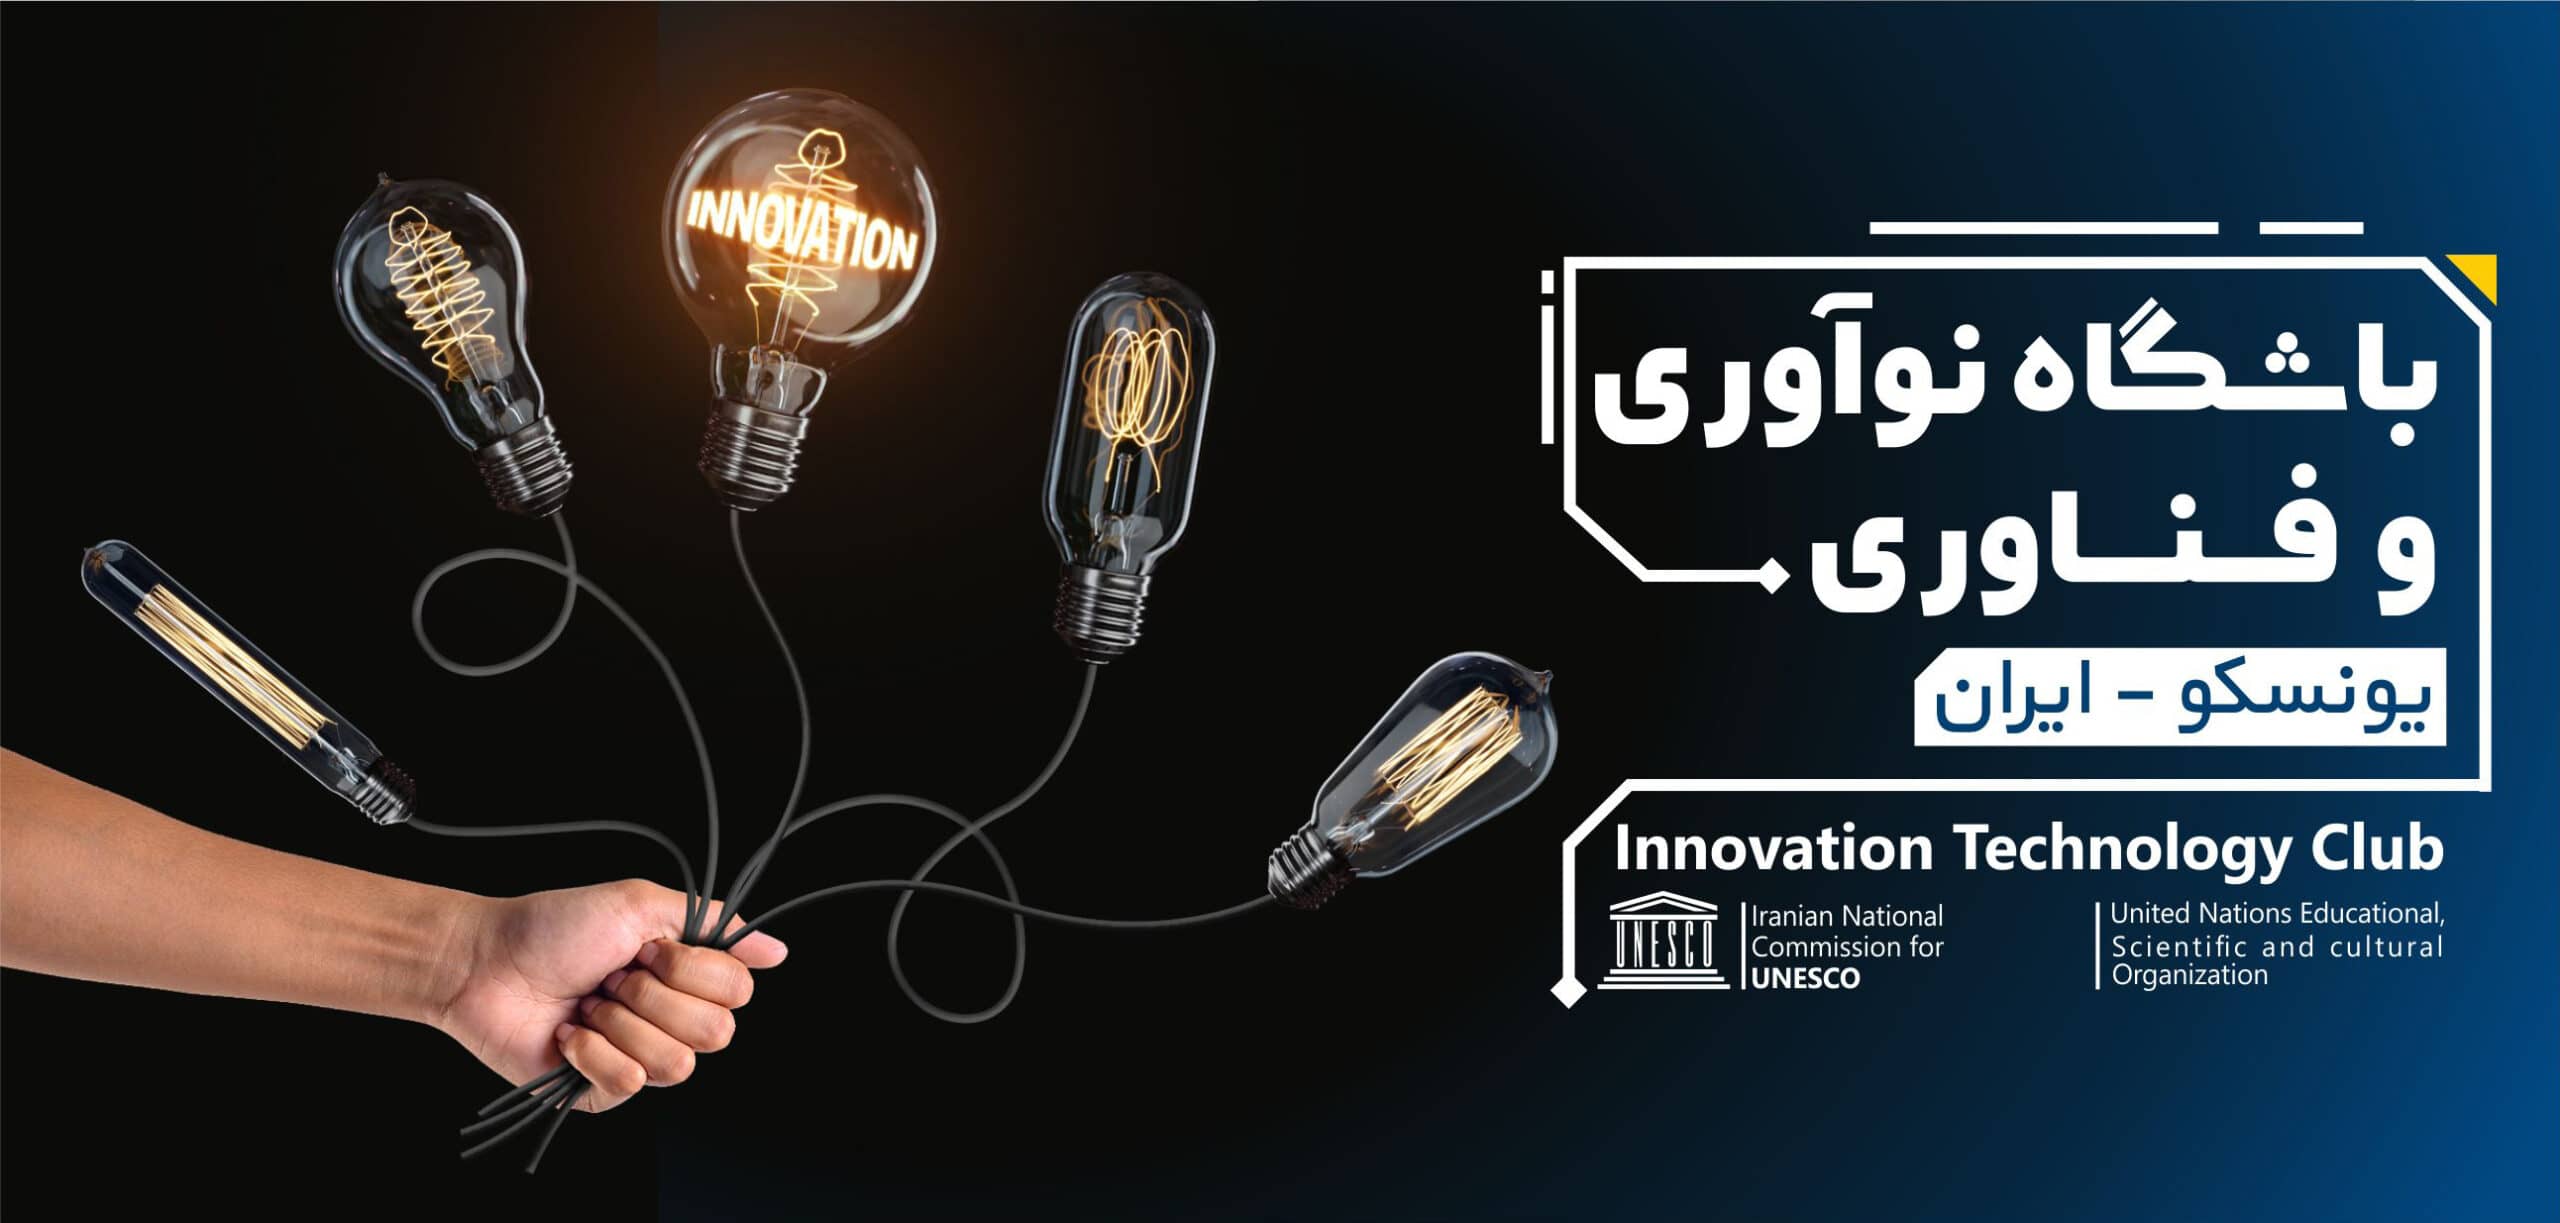 فردا؛ افتتاحیه باشگاه نوآوری و فناوری یونسکو-ایران